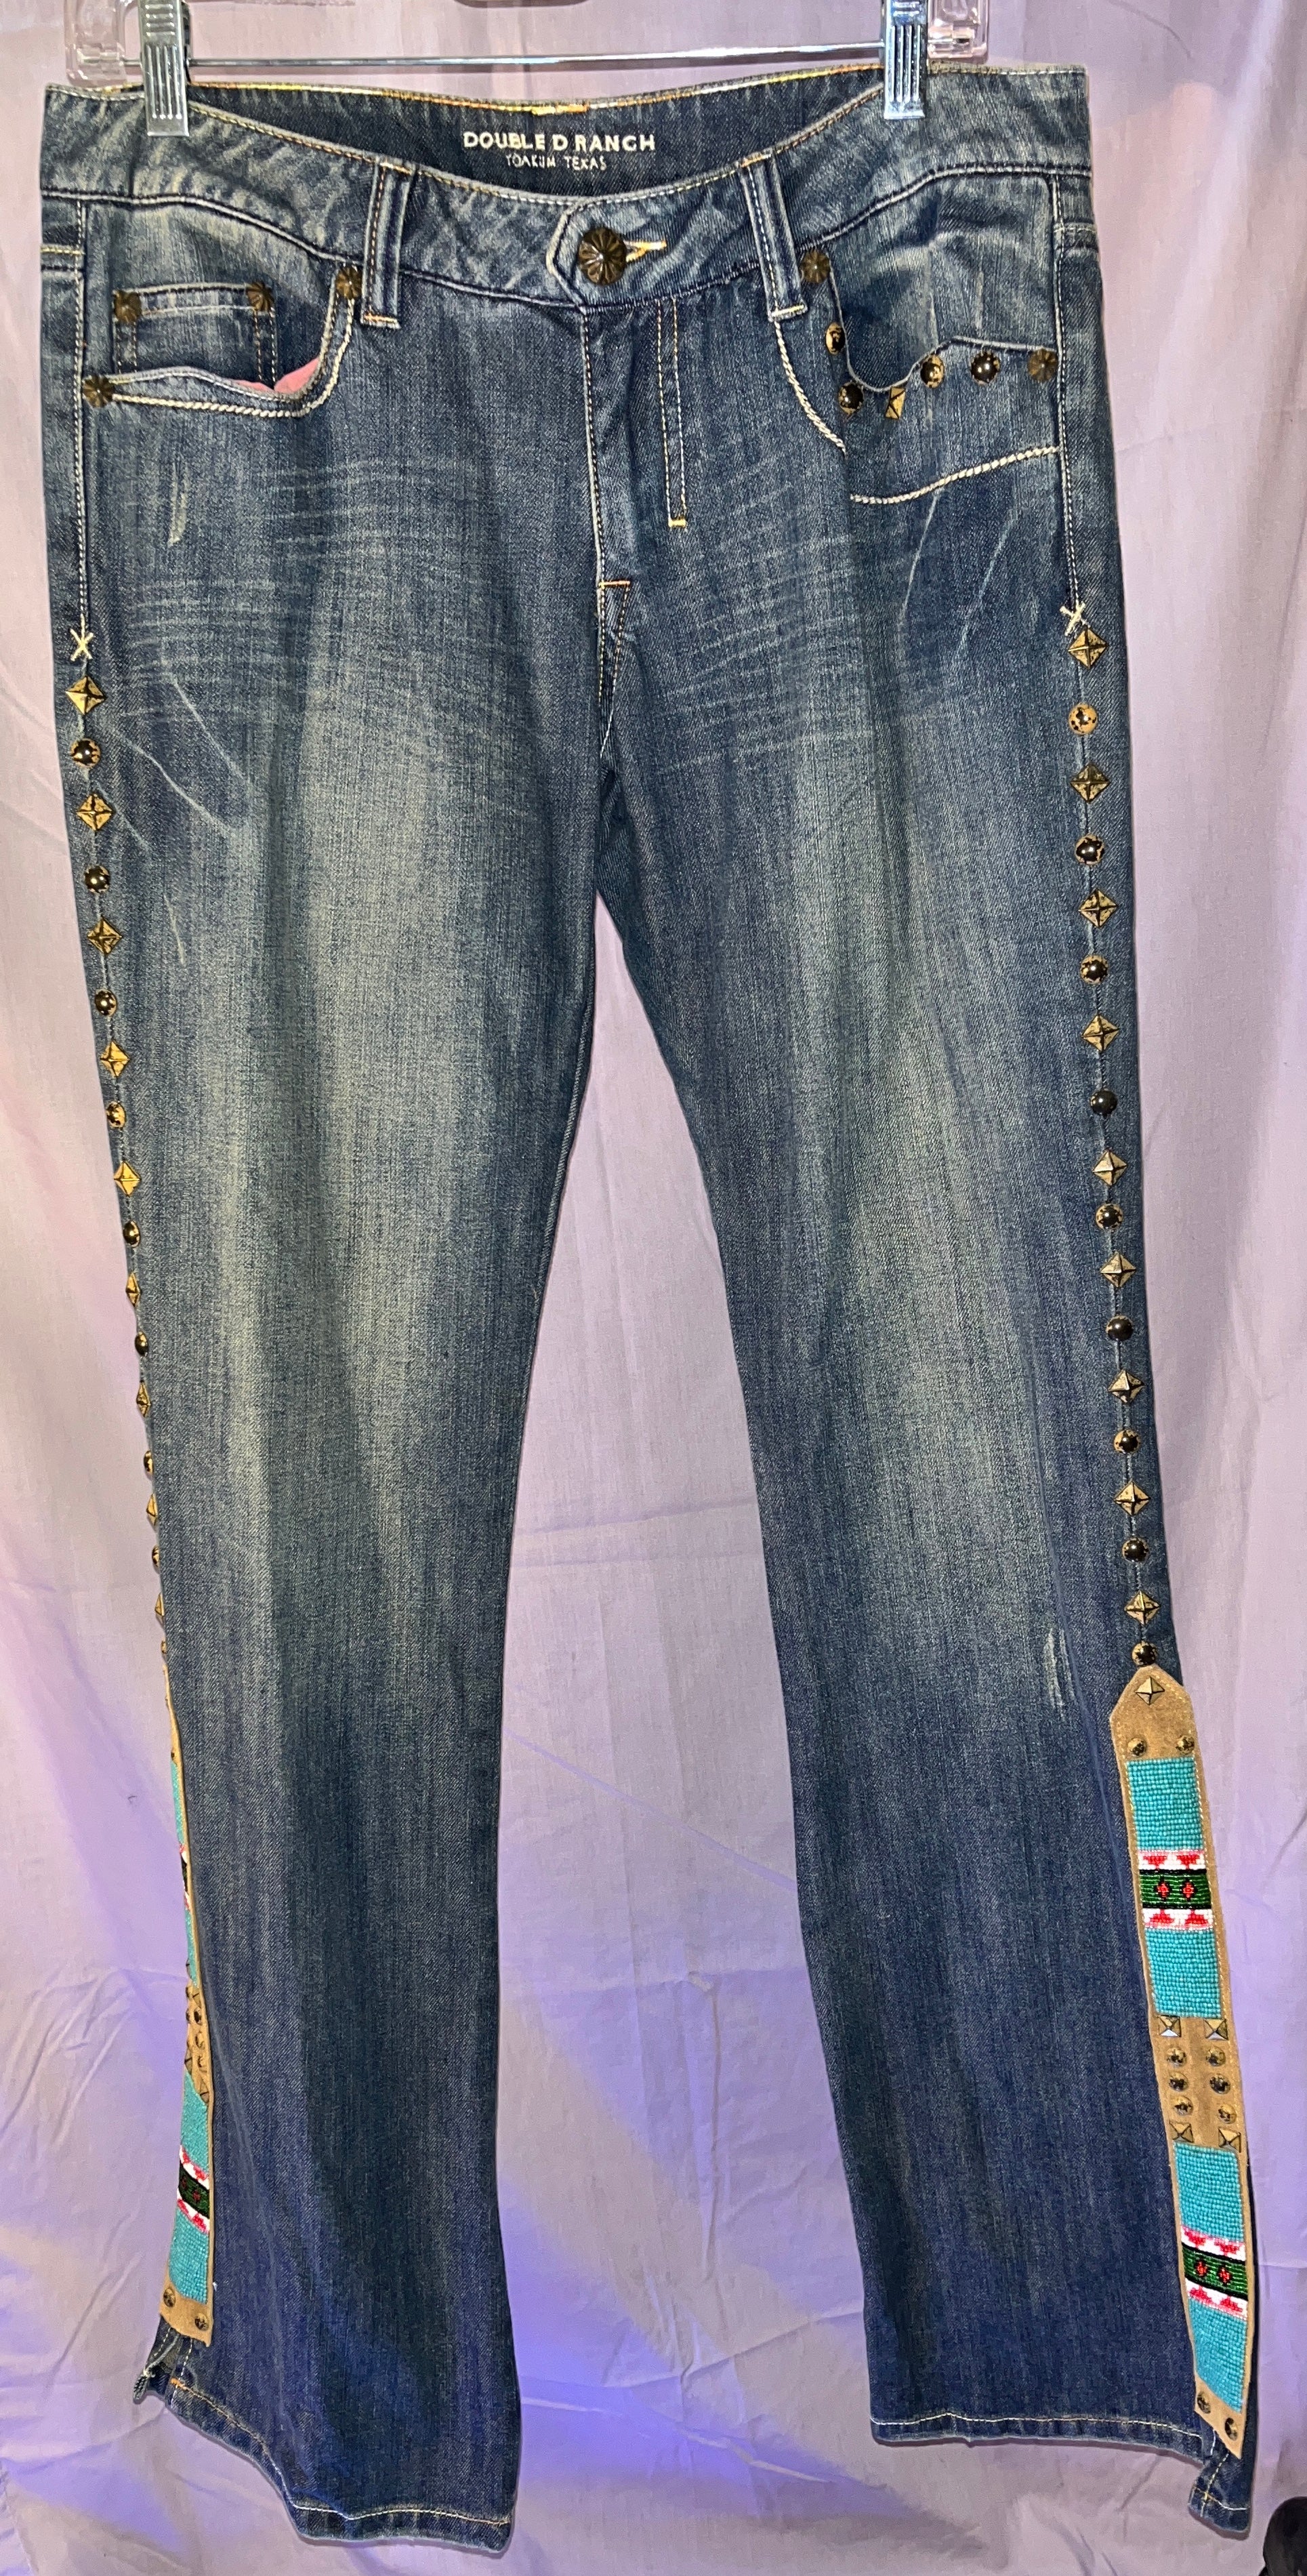 Double D Ranch Floral Jeans (Size 10 30/34) LAST PAIR